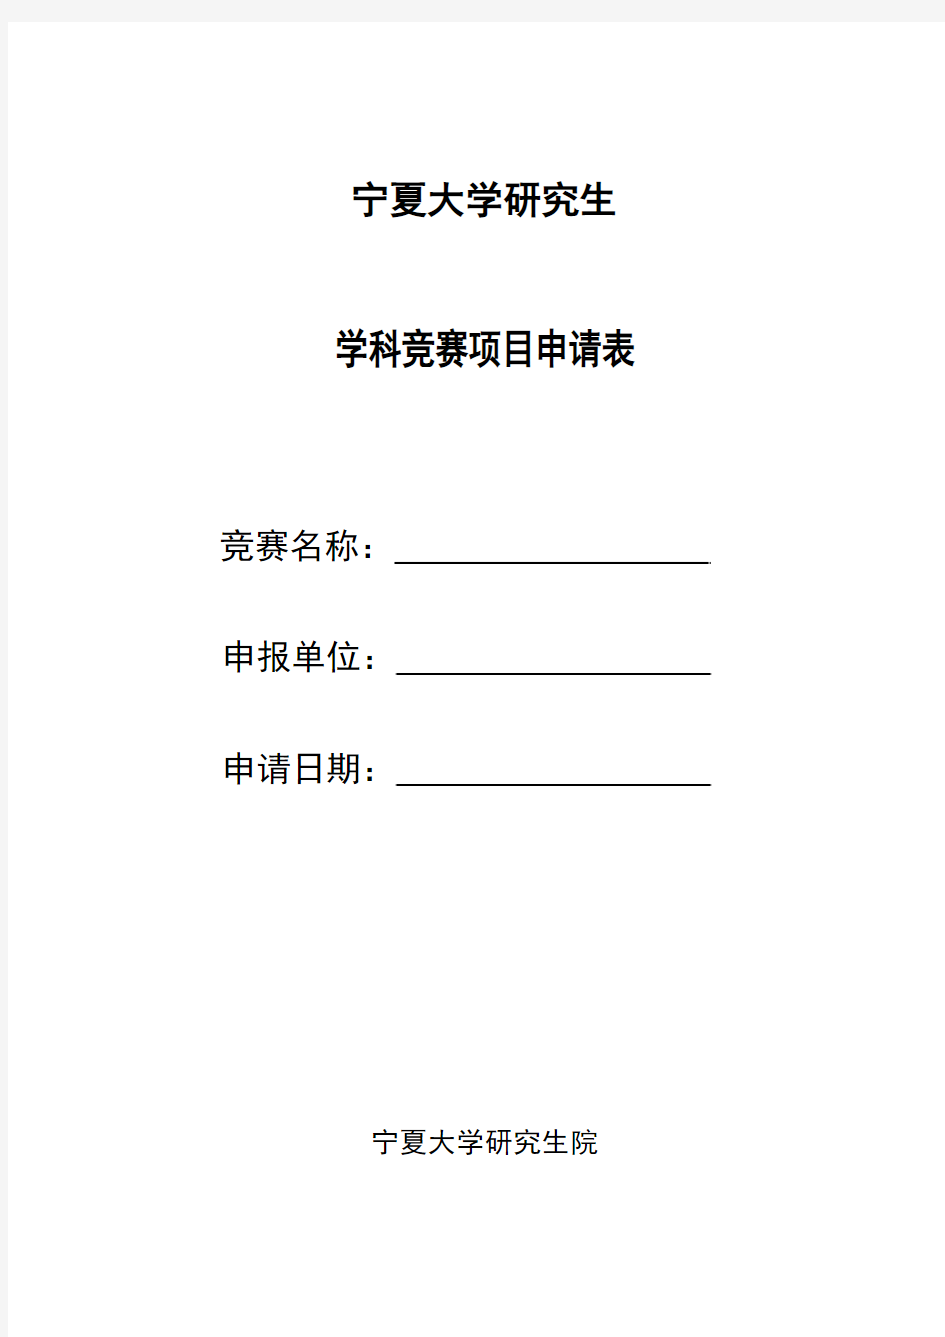 宁夏大学研究生学科竞赛项目申请表